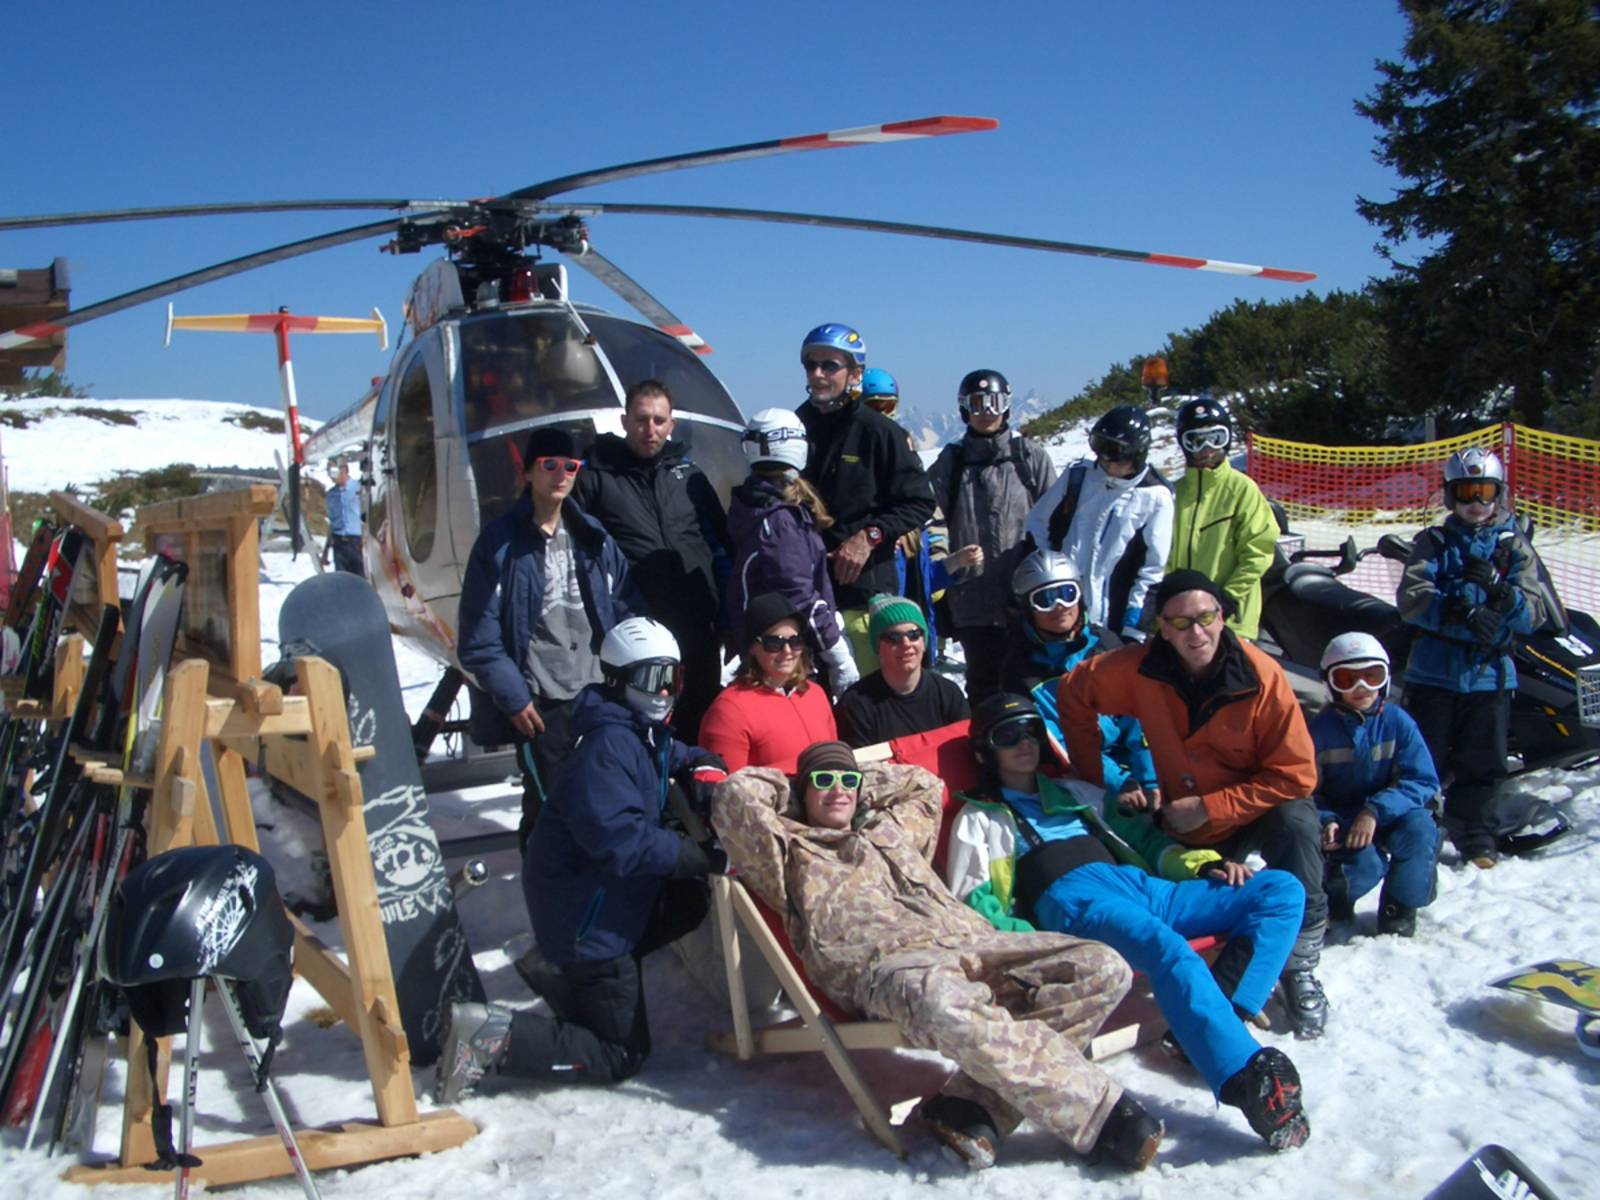 Jugendliche und Ihre Betreuer posieren im Schnee vor blauem Himmel und Helikopter